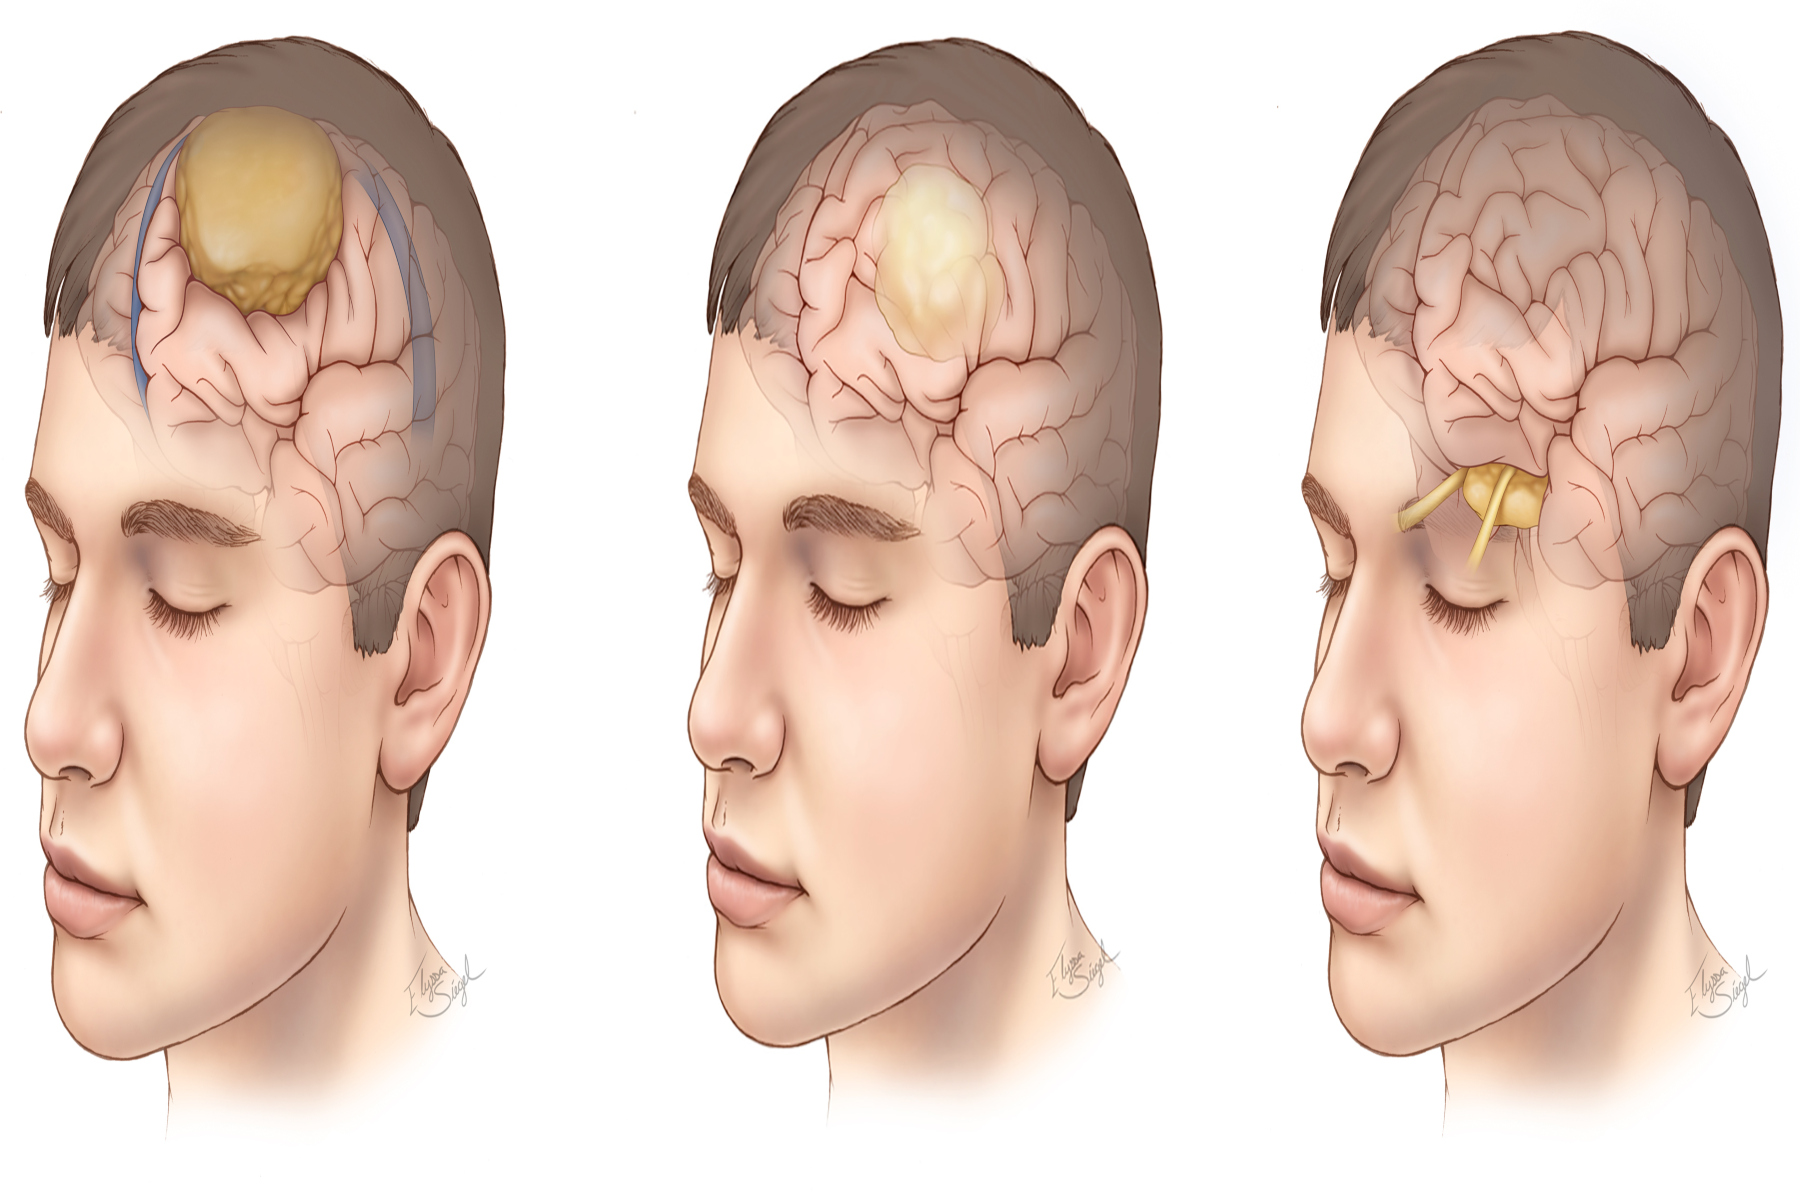 Όγκος εγκεφάλου: Είναι ο όγκος εγκεφάλου θανατηφόρος; Ποιες είναι οι επικίνδυνες πτυχές του;